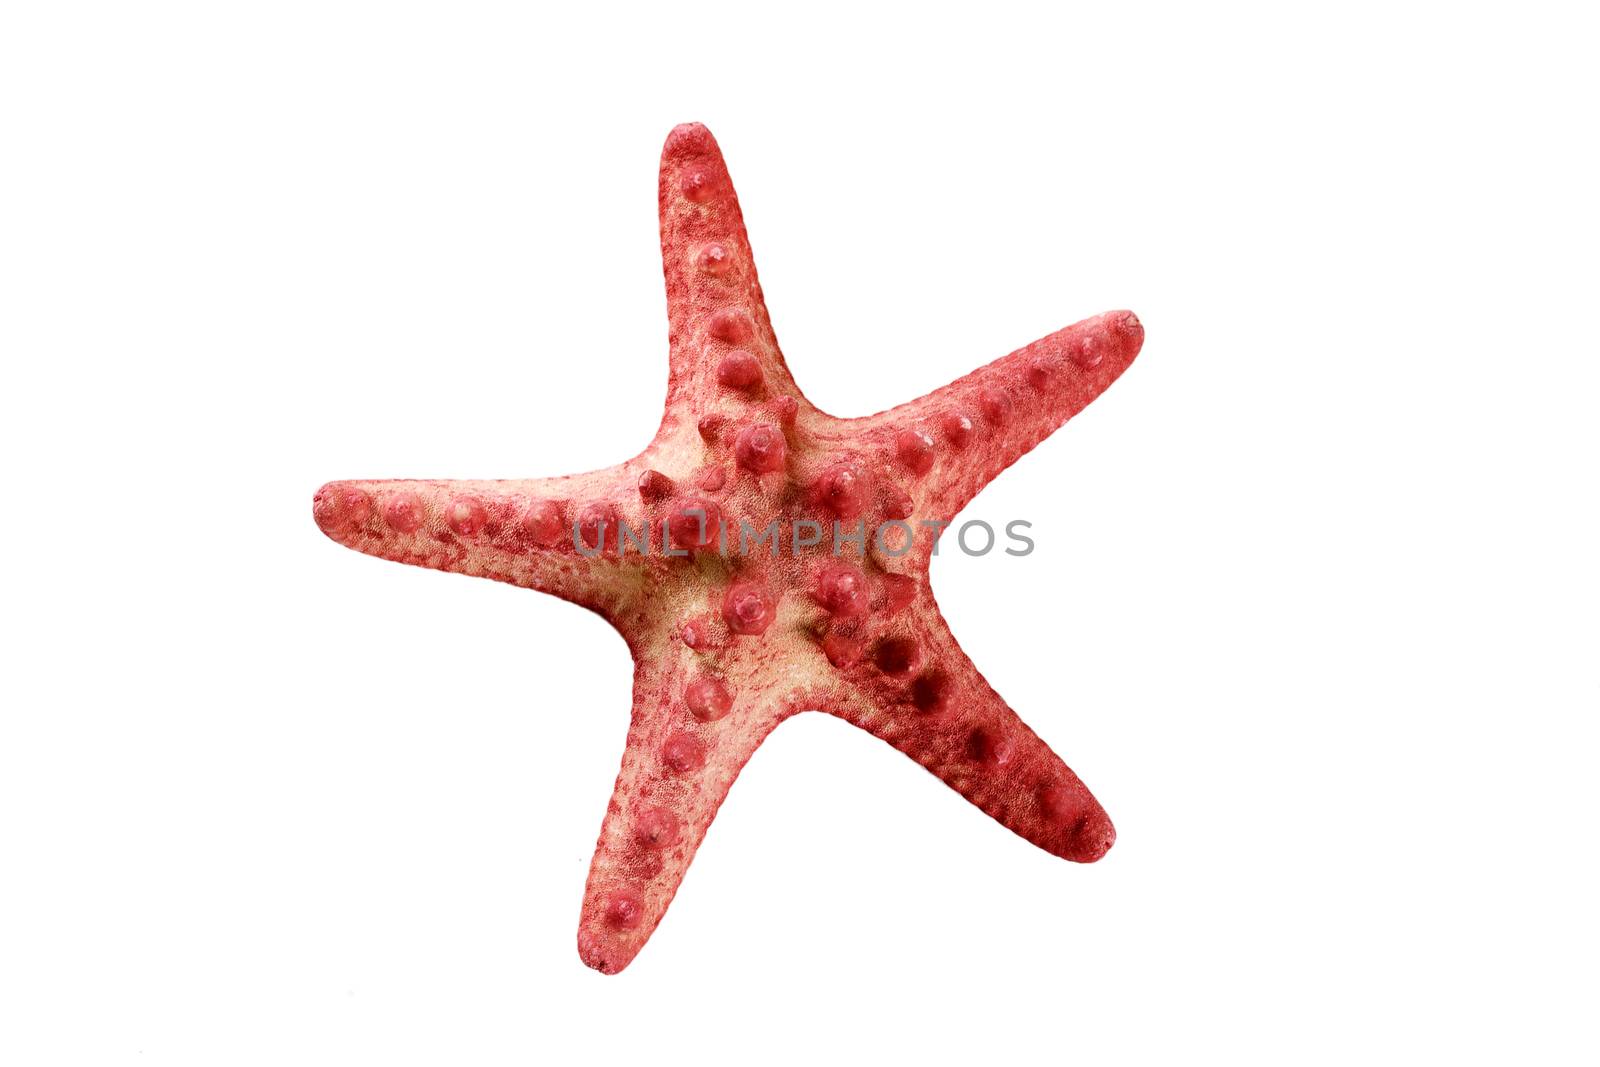 Red starfish by Irina1977